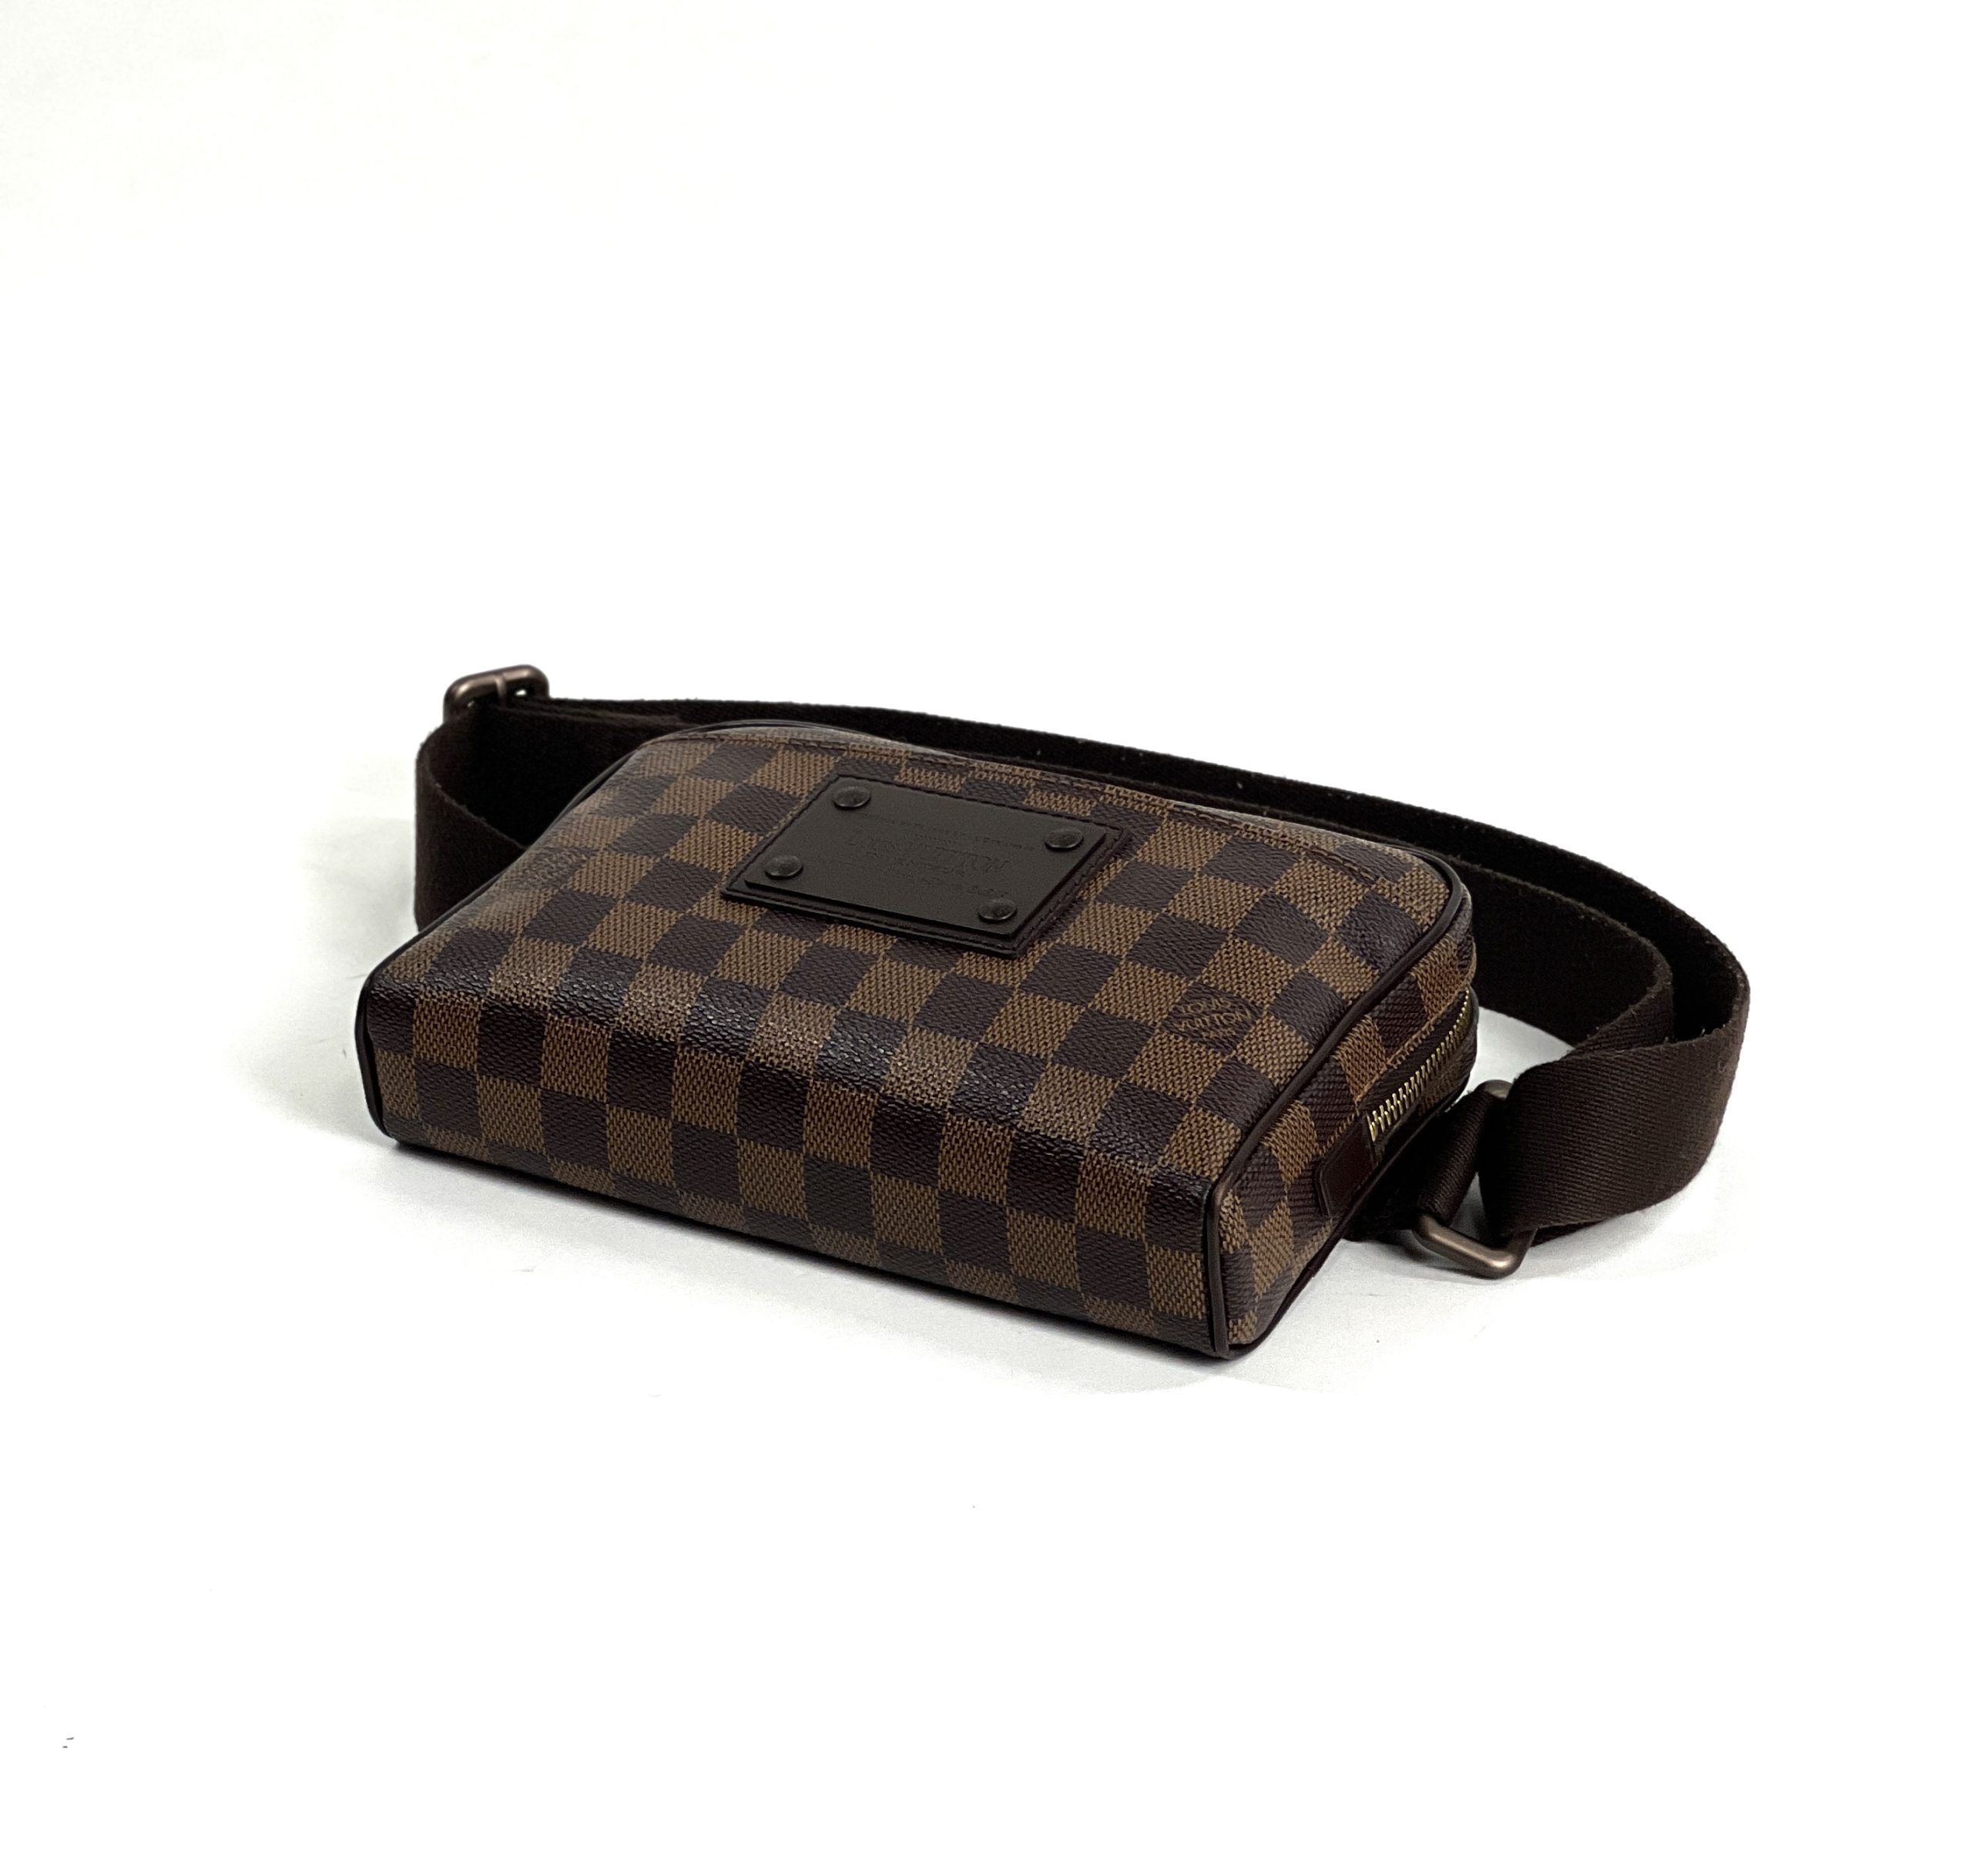 Louis Vuitton Damier Ebene Brooklyn Bum Bag A World Of, 59% OFF